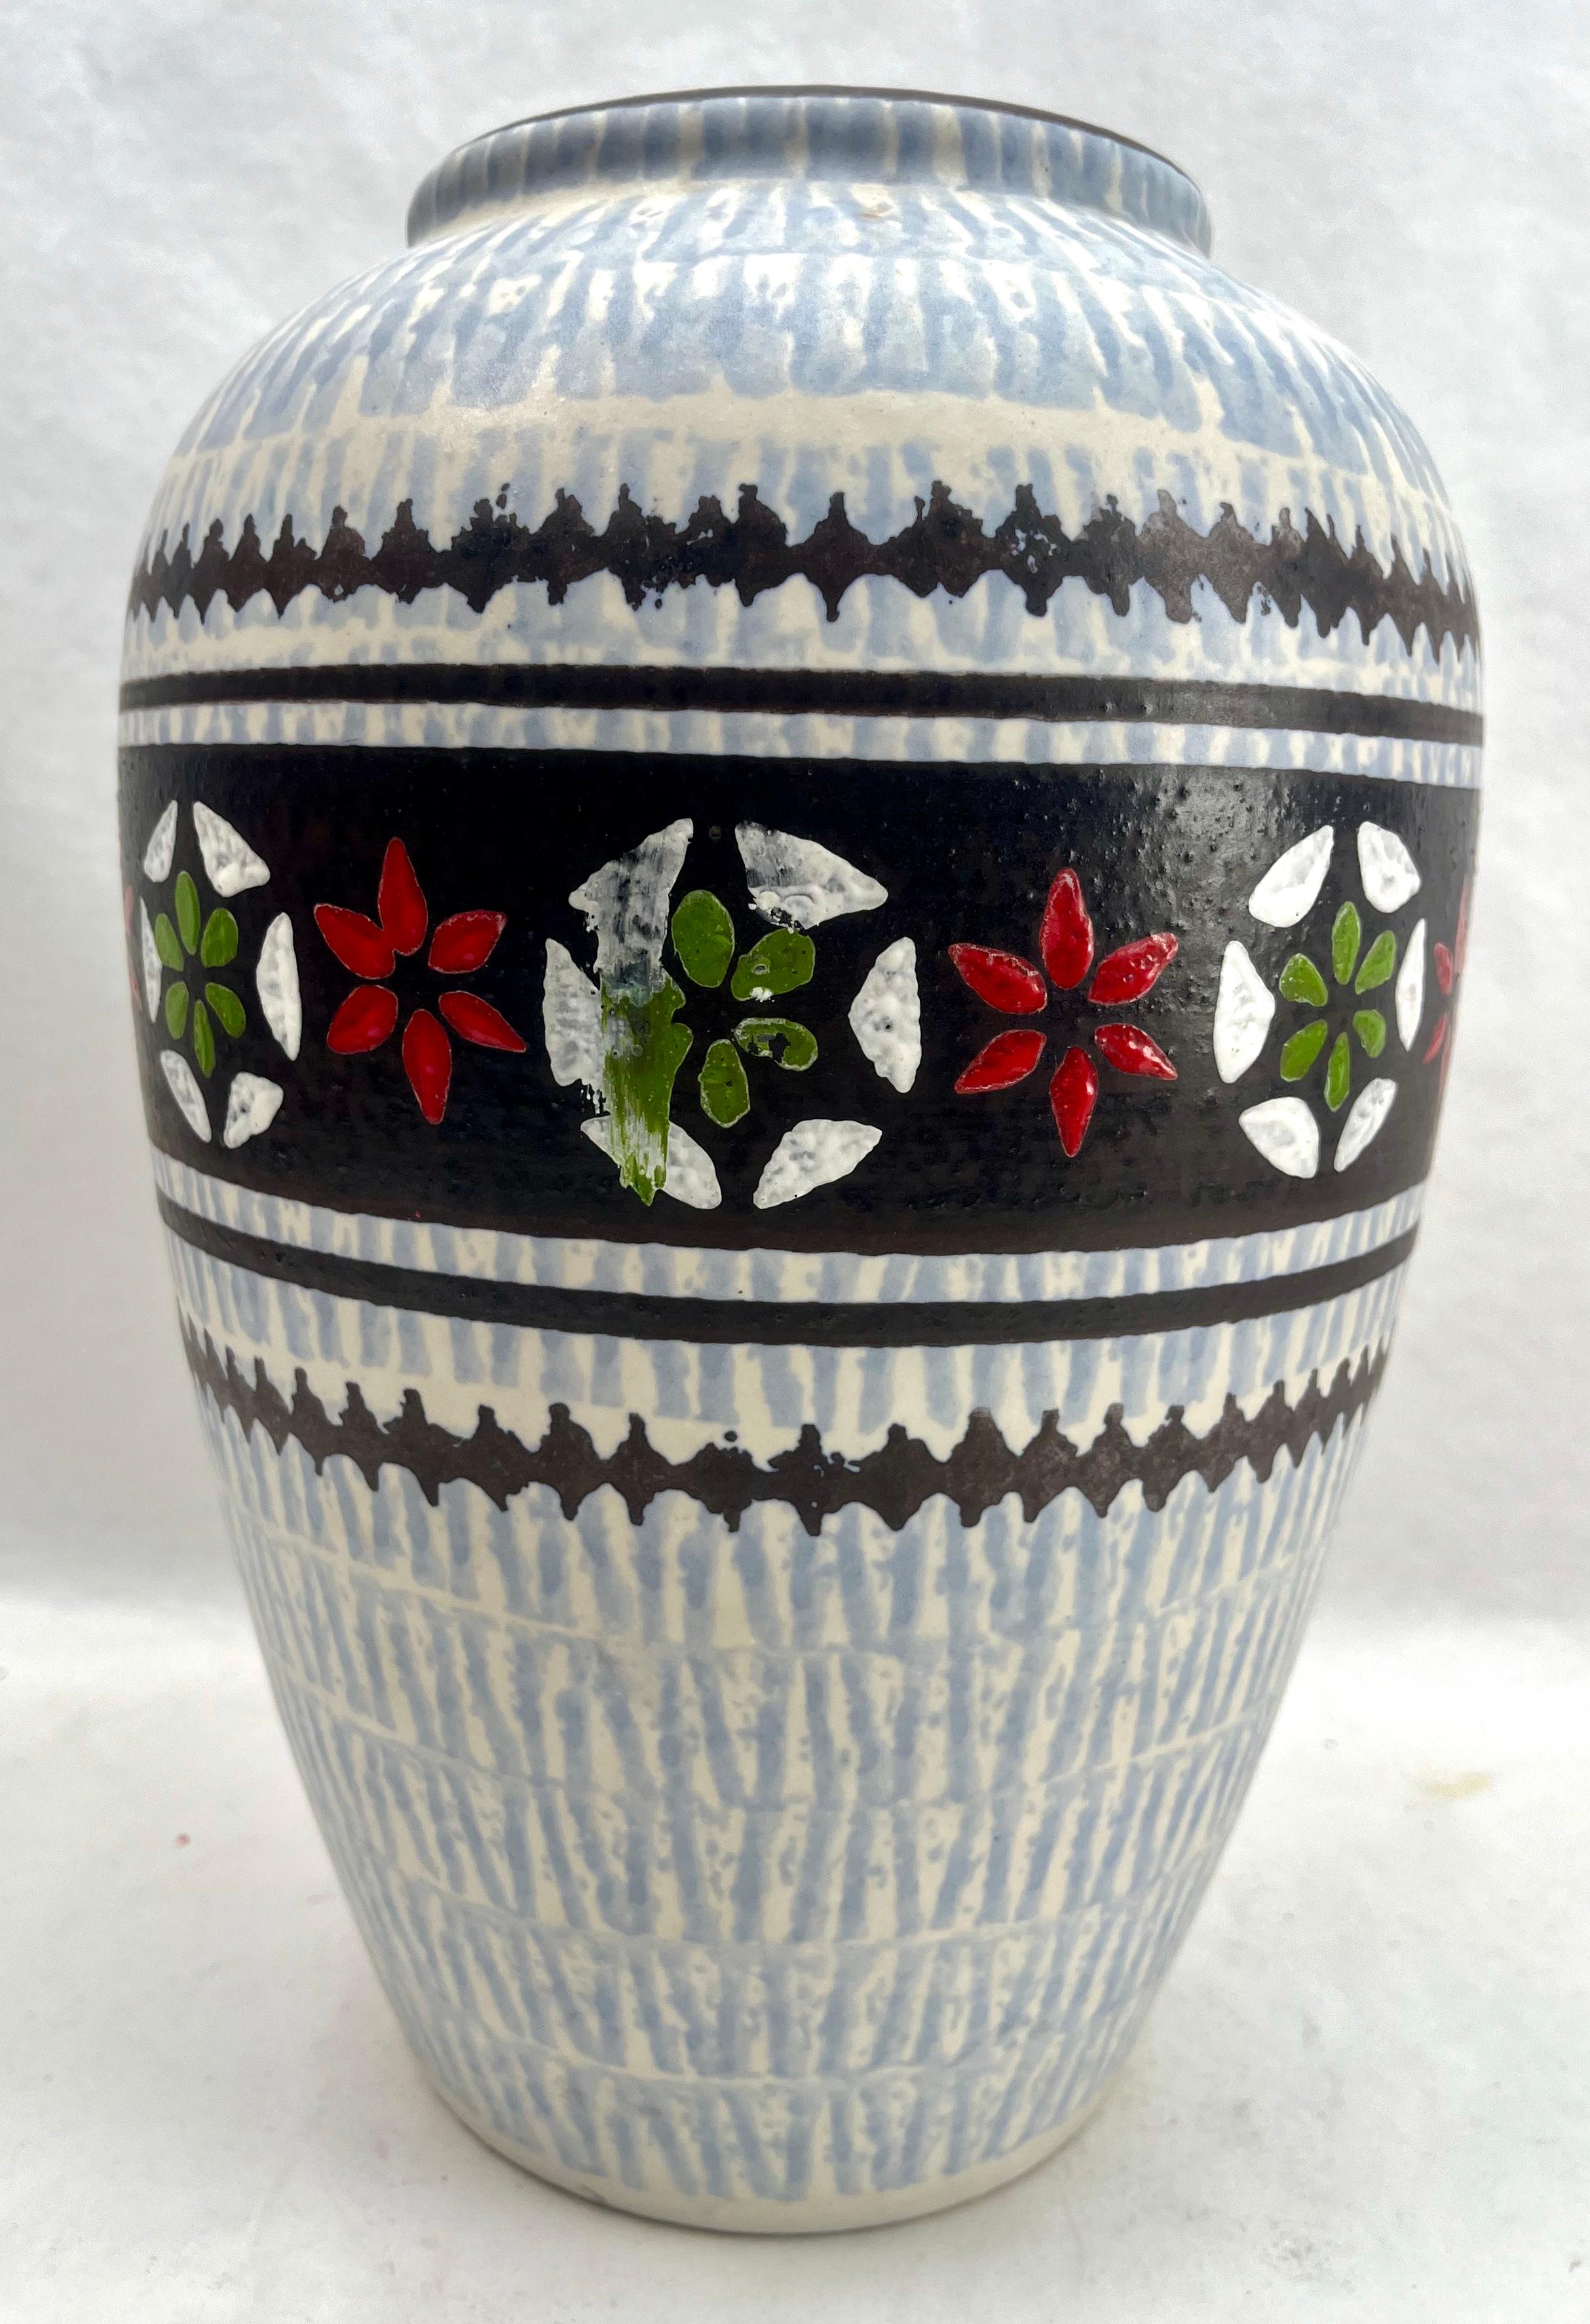 Ce vase vintage original de Jasba a été produit dans les années 1970 en Allemagne. Il est fabriqué en céramique.
Le fond est marqué du numéro de série du vase 136-26 Handarbeit.
Un design direct et minimaliste de l'ère du design des années 1960.